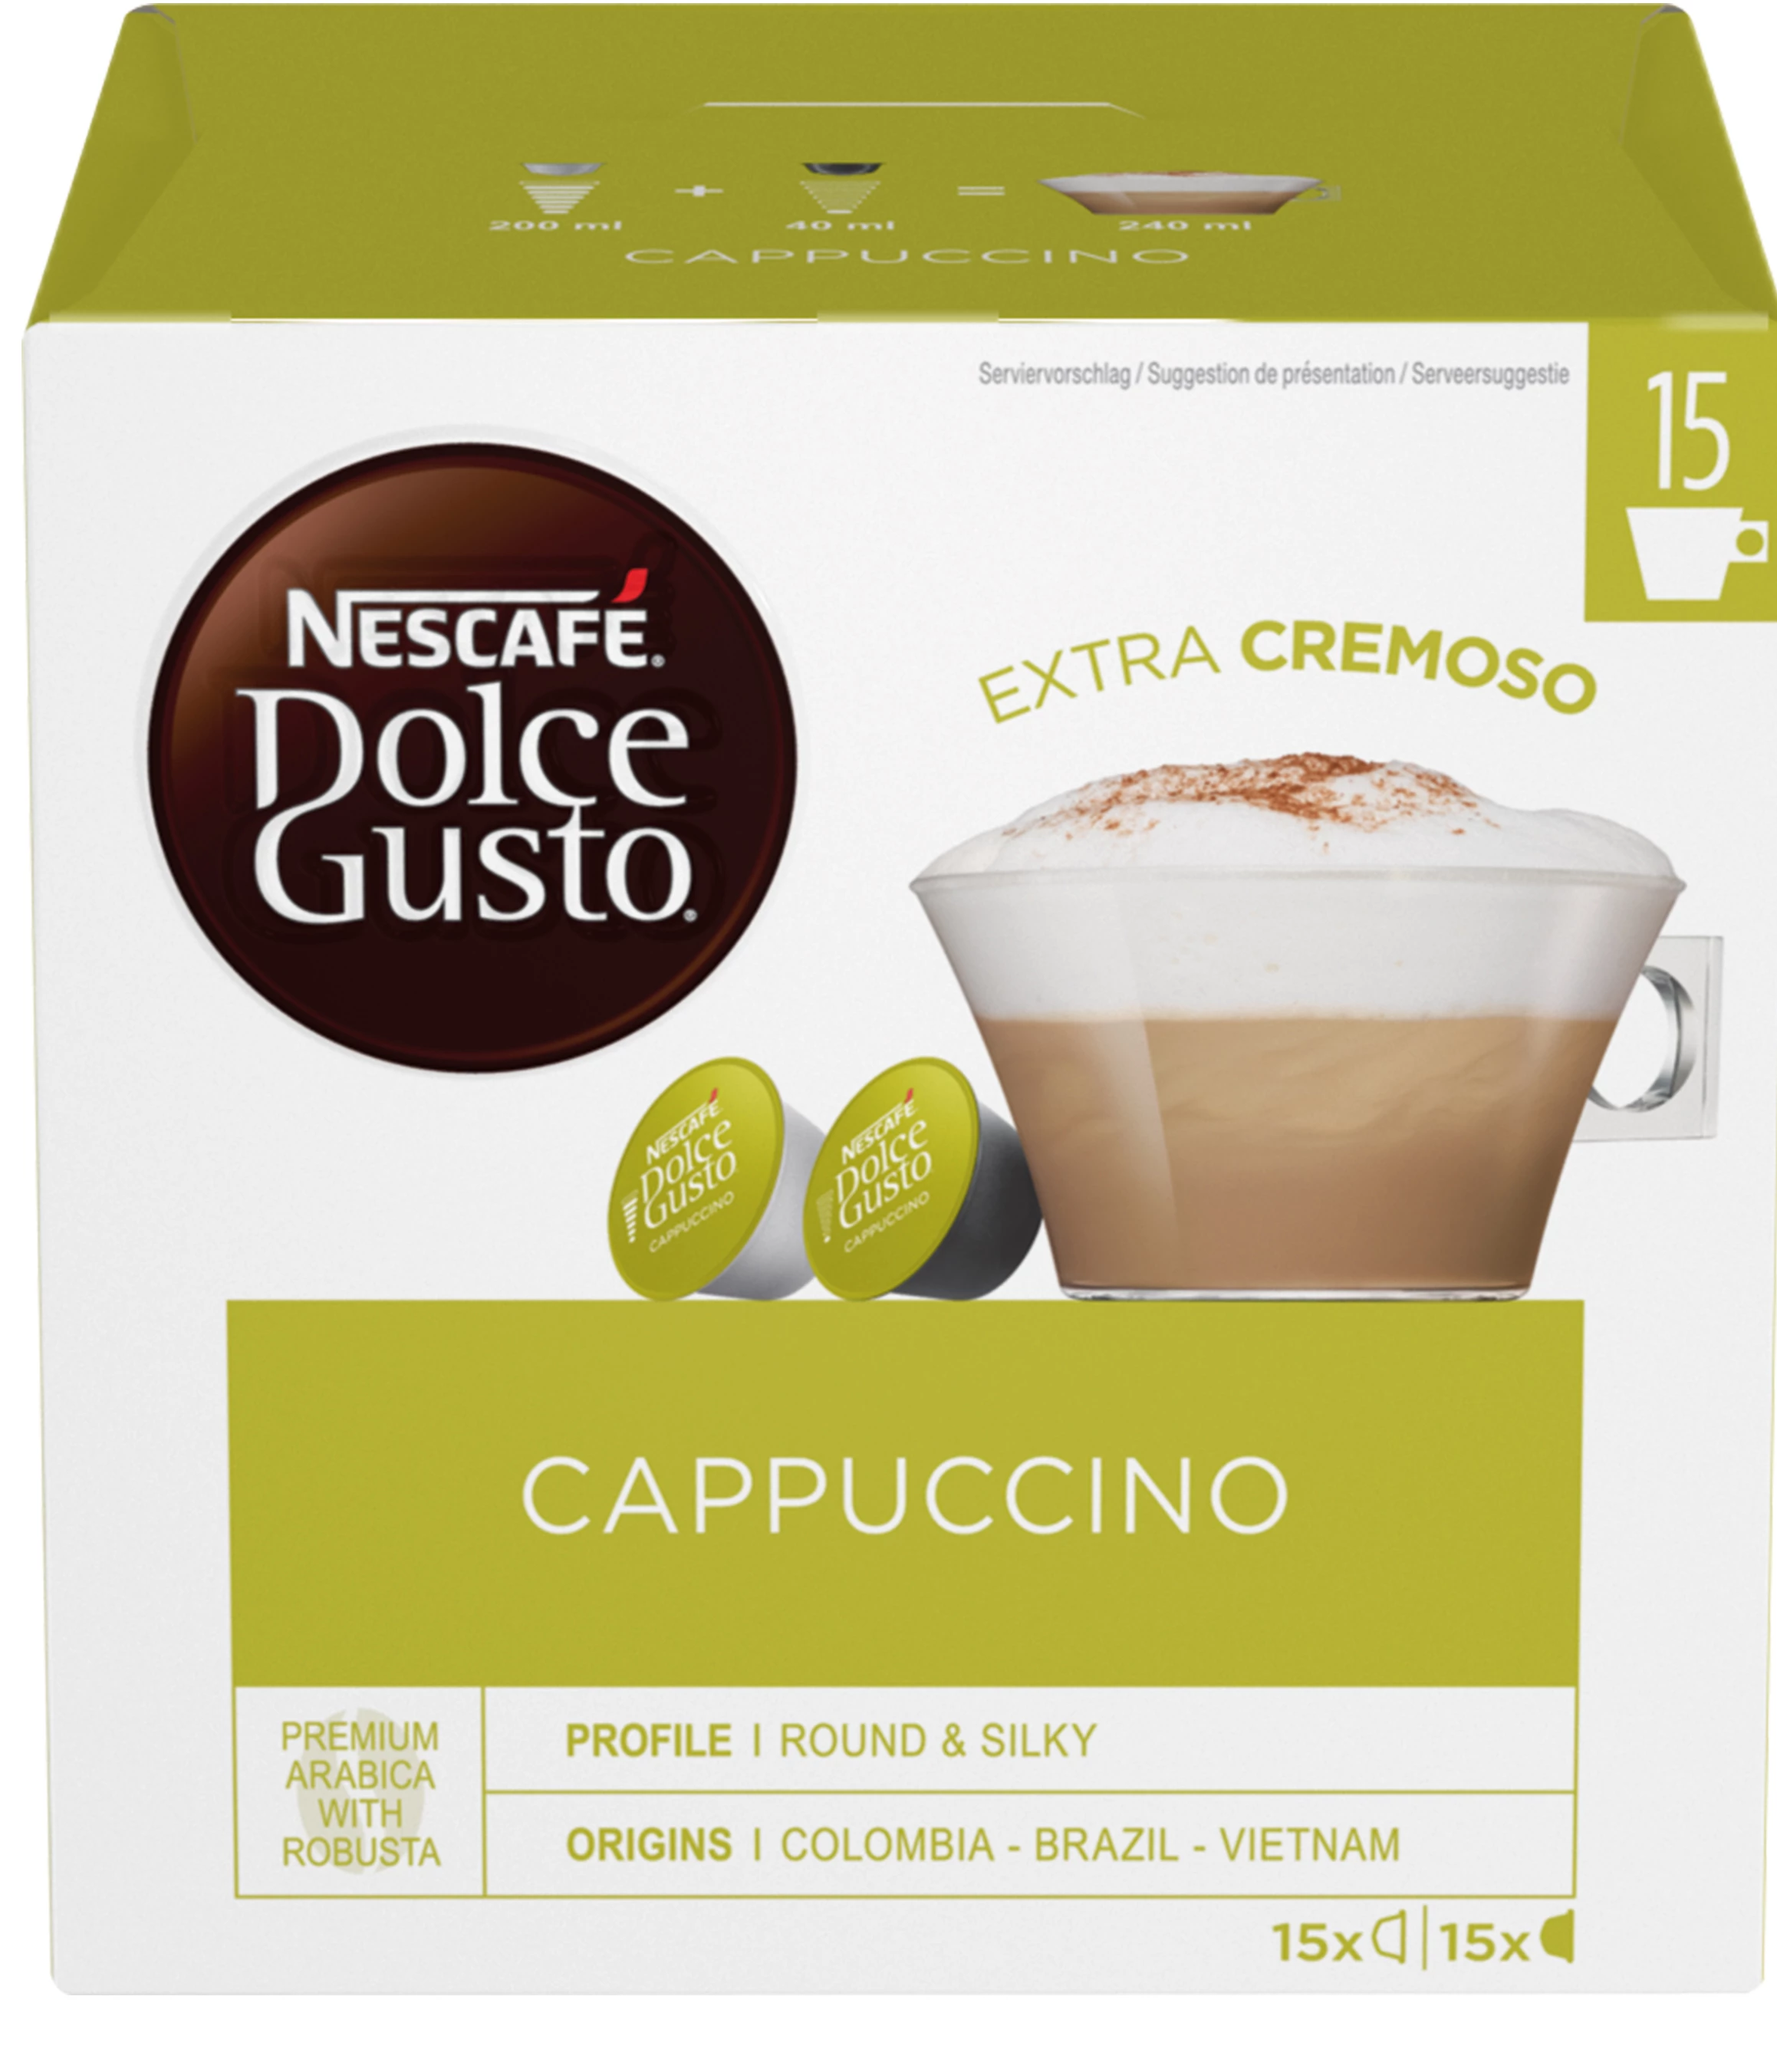 Cappuccino x30 - NESCAFE DOLCE GUSTO